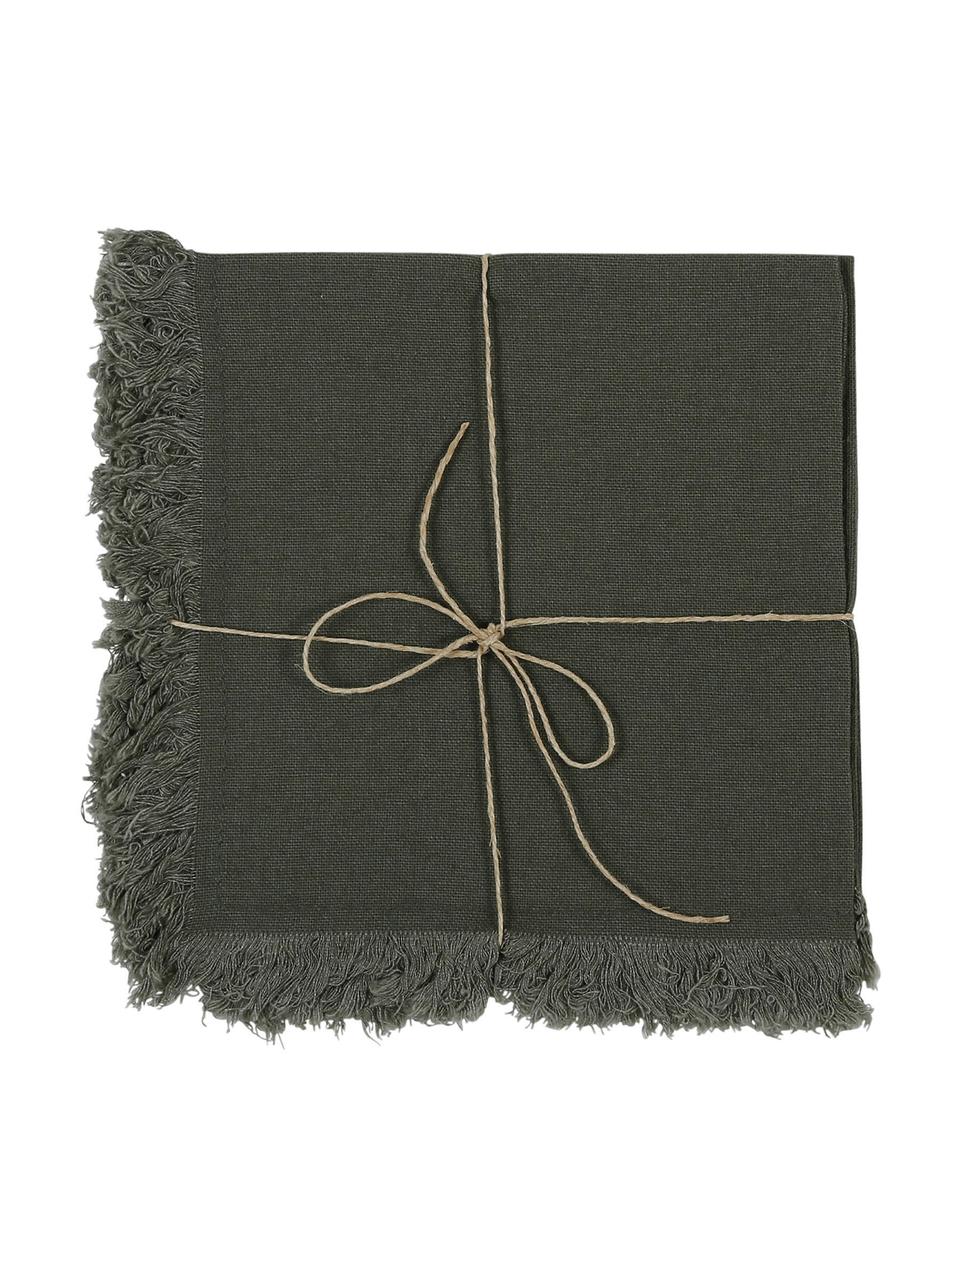 Baumwoll-Servietten Nalia in Grau mit Fransen, 2 Stück, Baumwolle, Grau, B 35 x L 35 cm